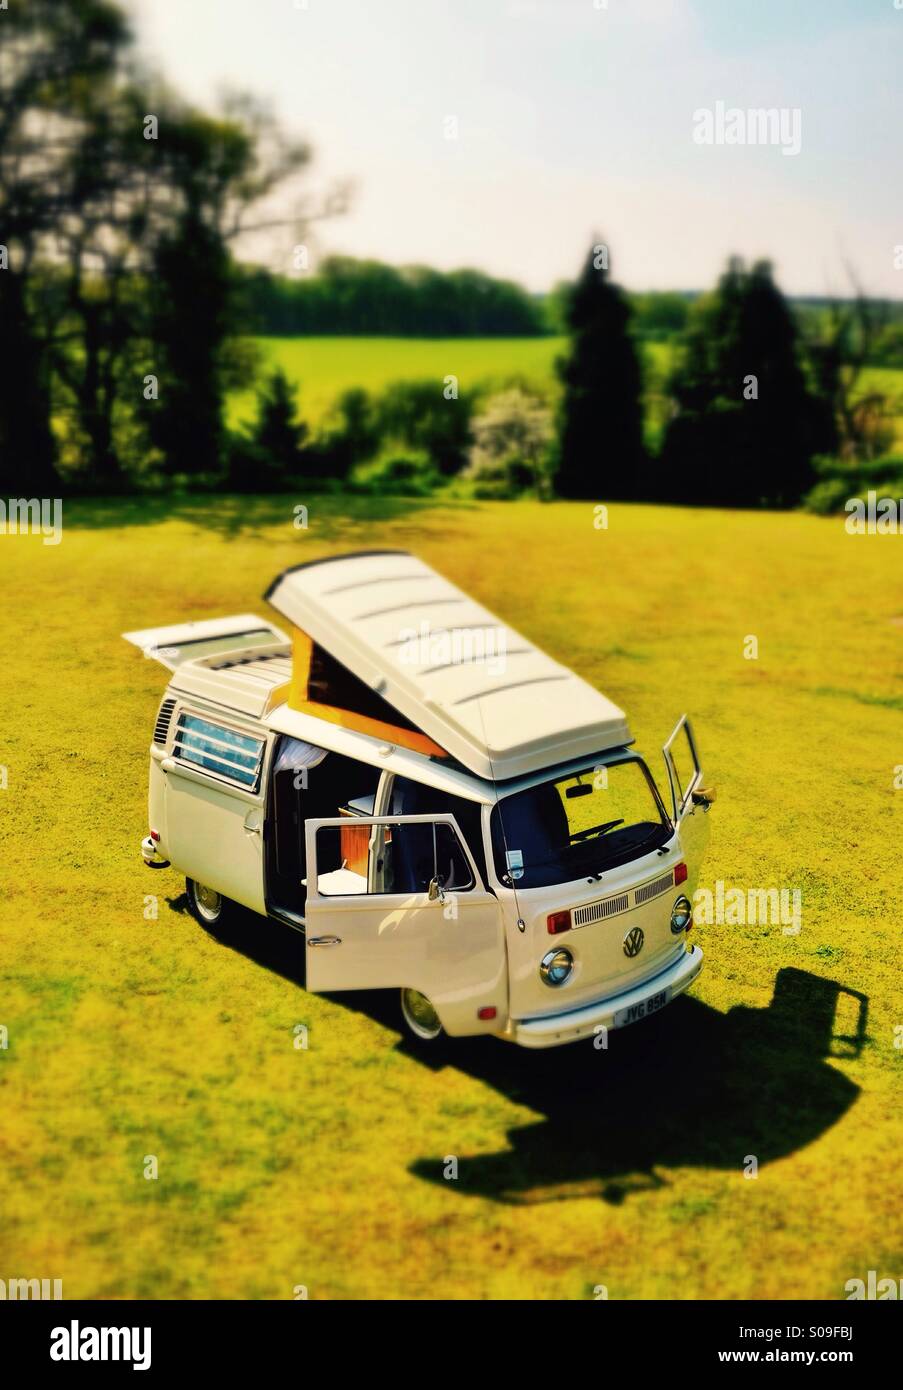 A classic 1970's VW camper van (tilt shift) Stock Photo